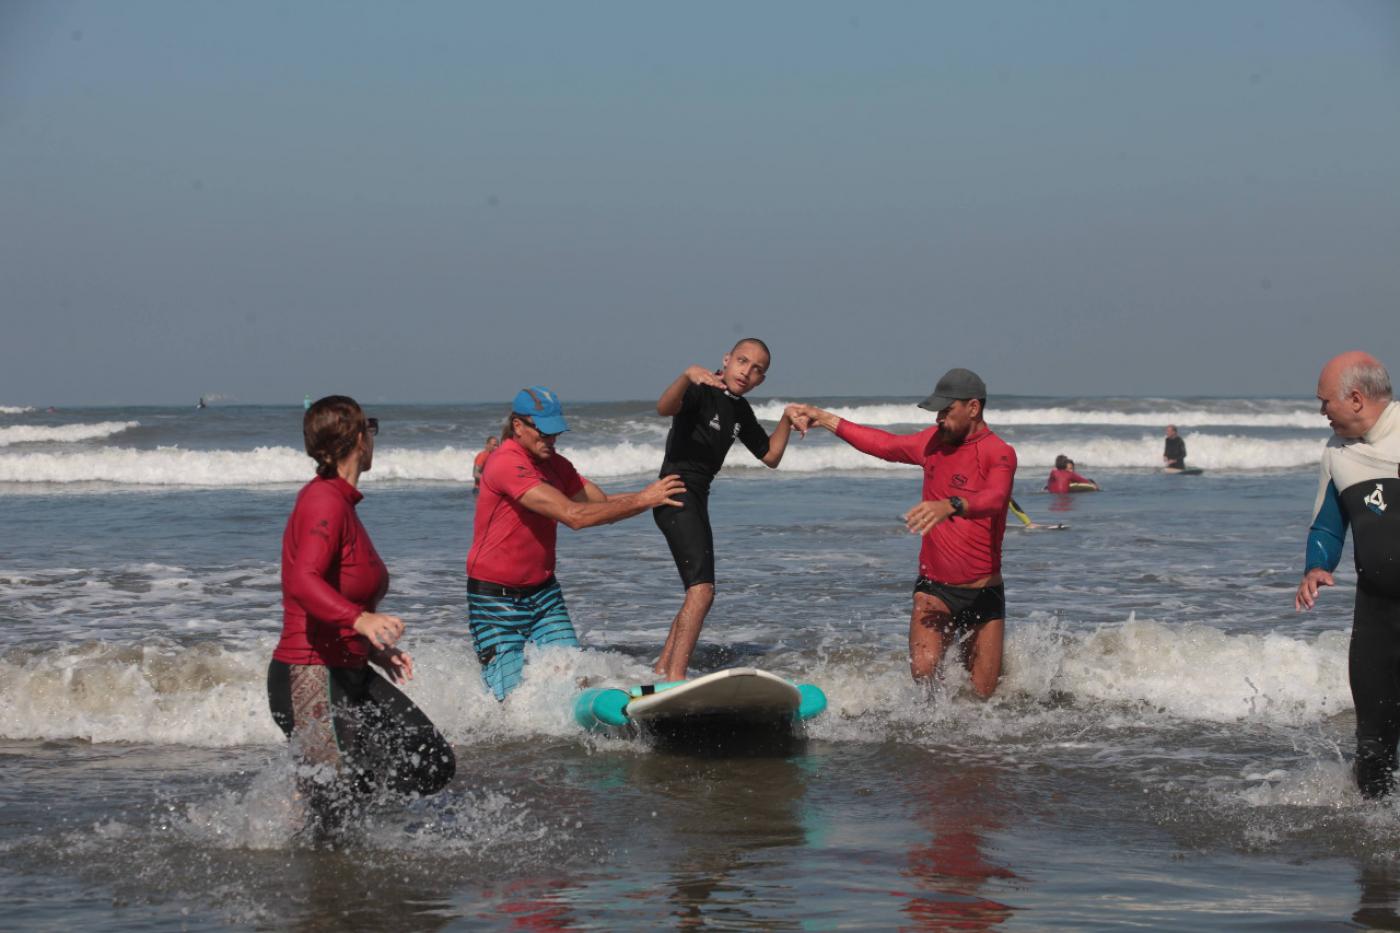 Jovem com deficiência pratica surfe adaptado com ajuda de instrutores. #paratodosverem